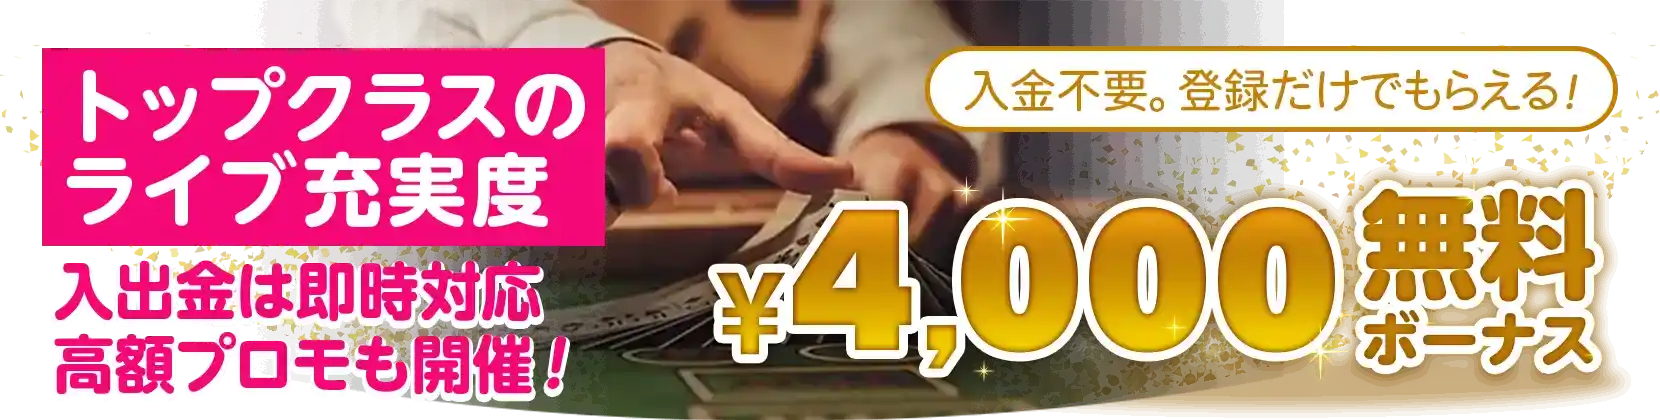 ネットカジノJP限定4,000円無料チップ告知画像